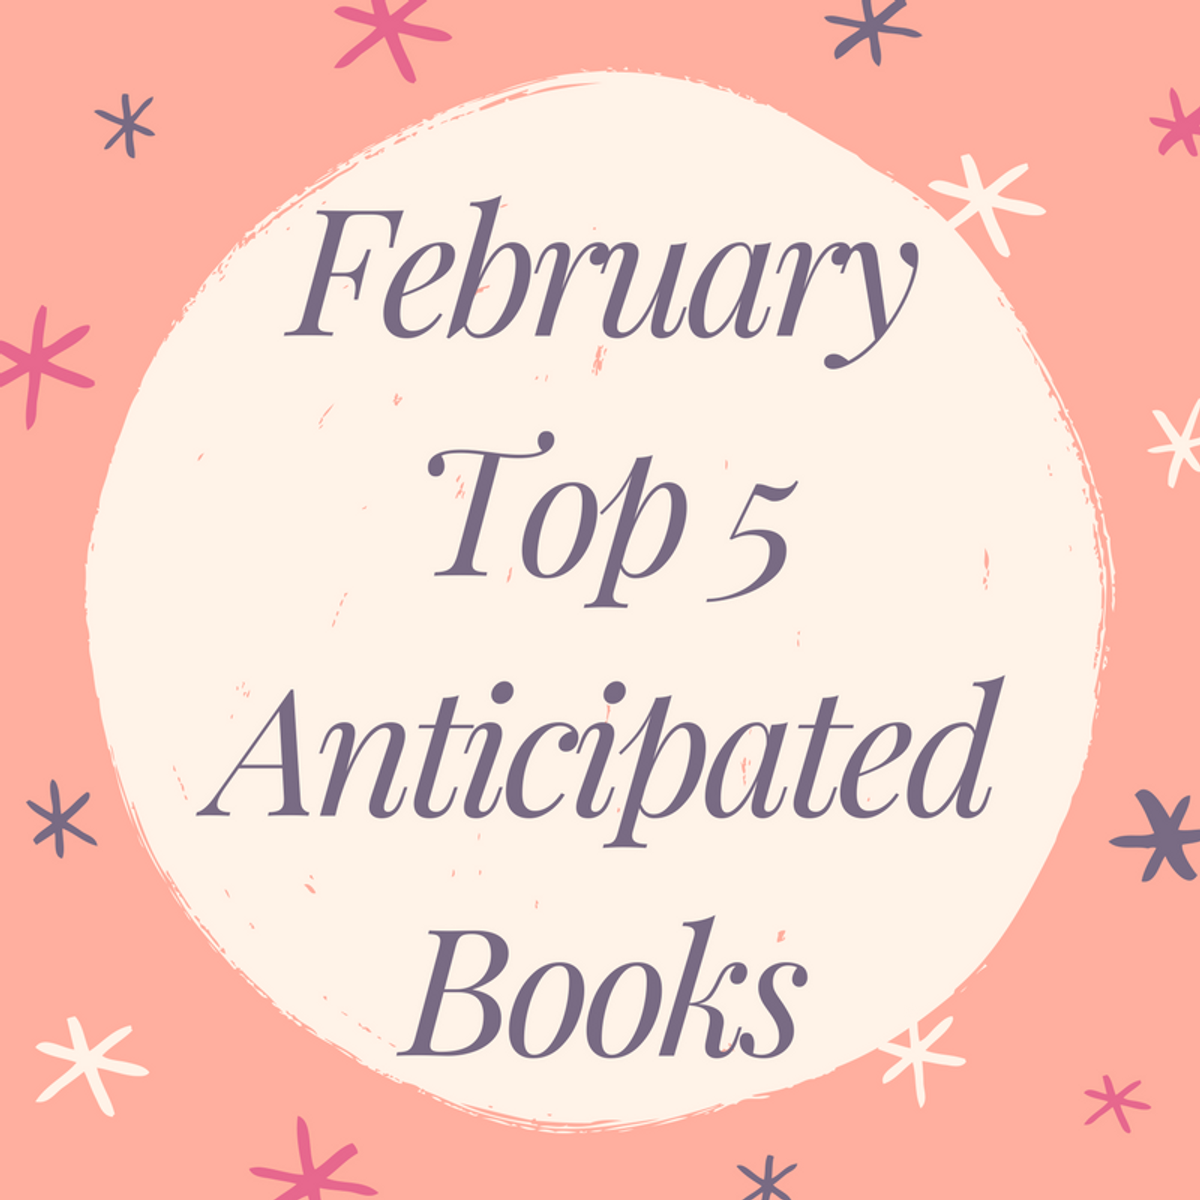 February Top 5 Anticipated Books